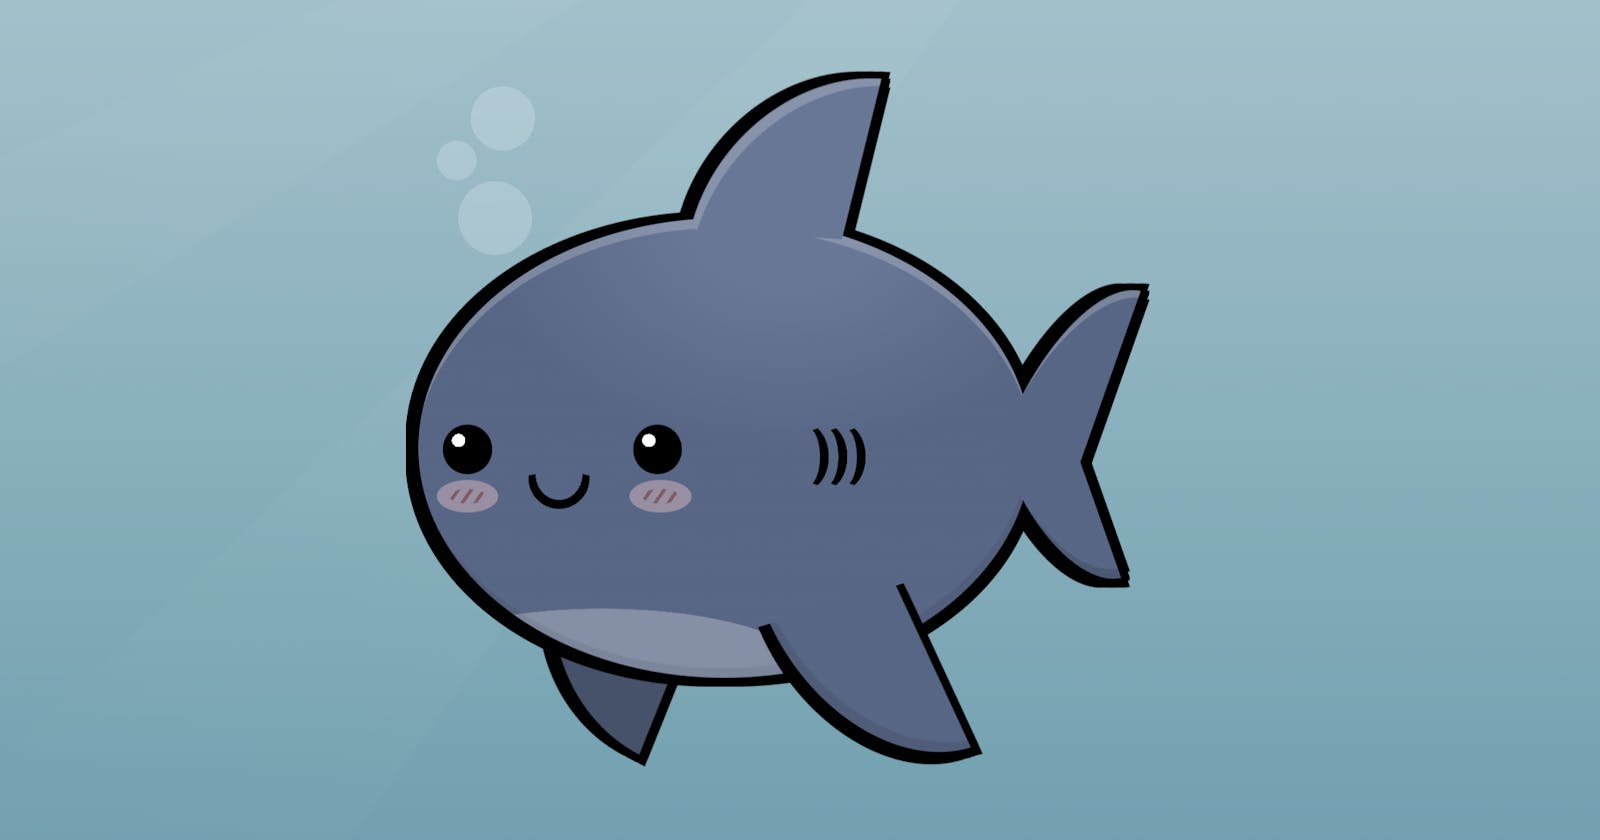 Drawing kawaii sharks and sea life with HTML and CSS